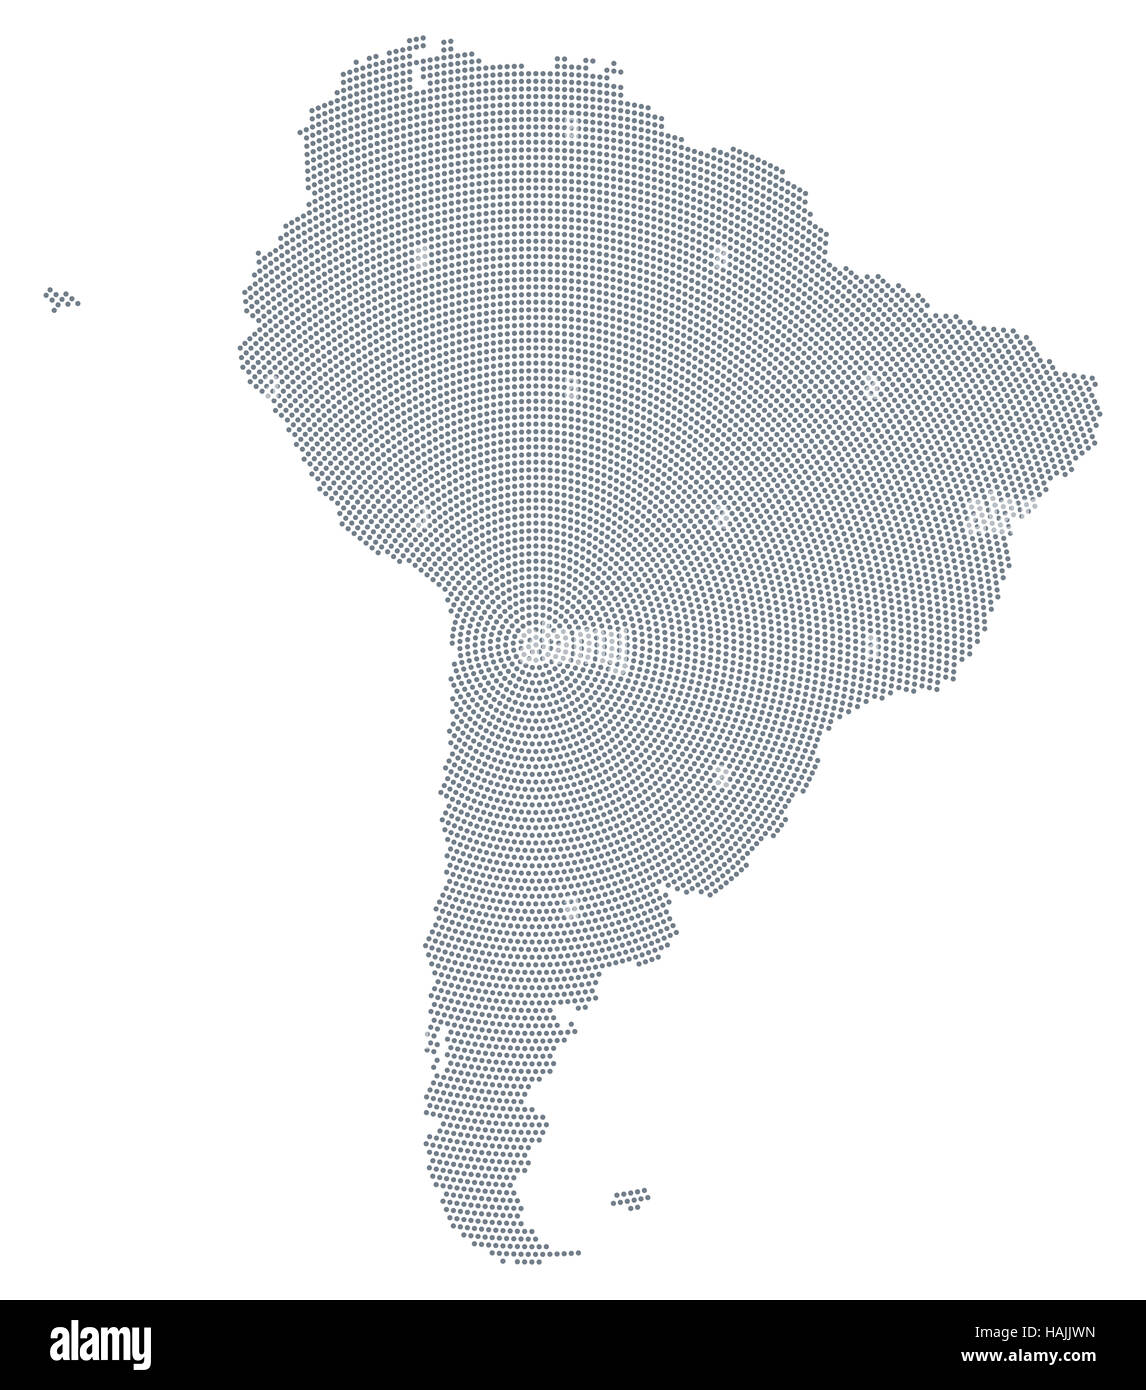 Sud America mappa radiale pattern a punti. Puntini grigi andando dal centro formando i contorni del continente. Foto Stock